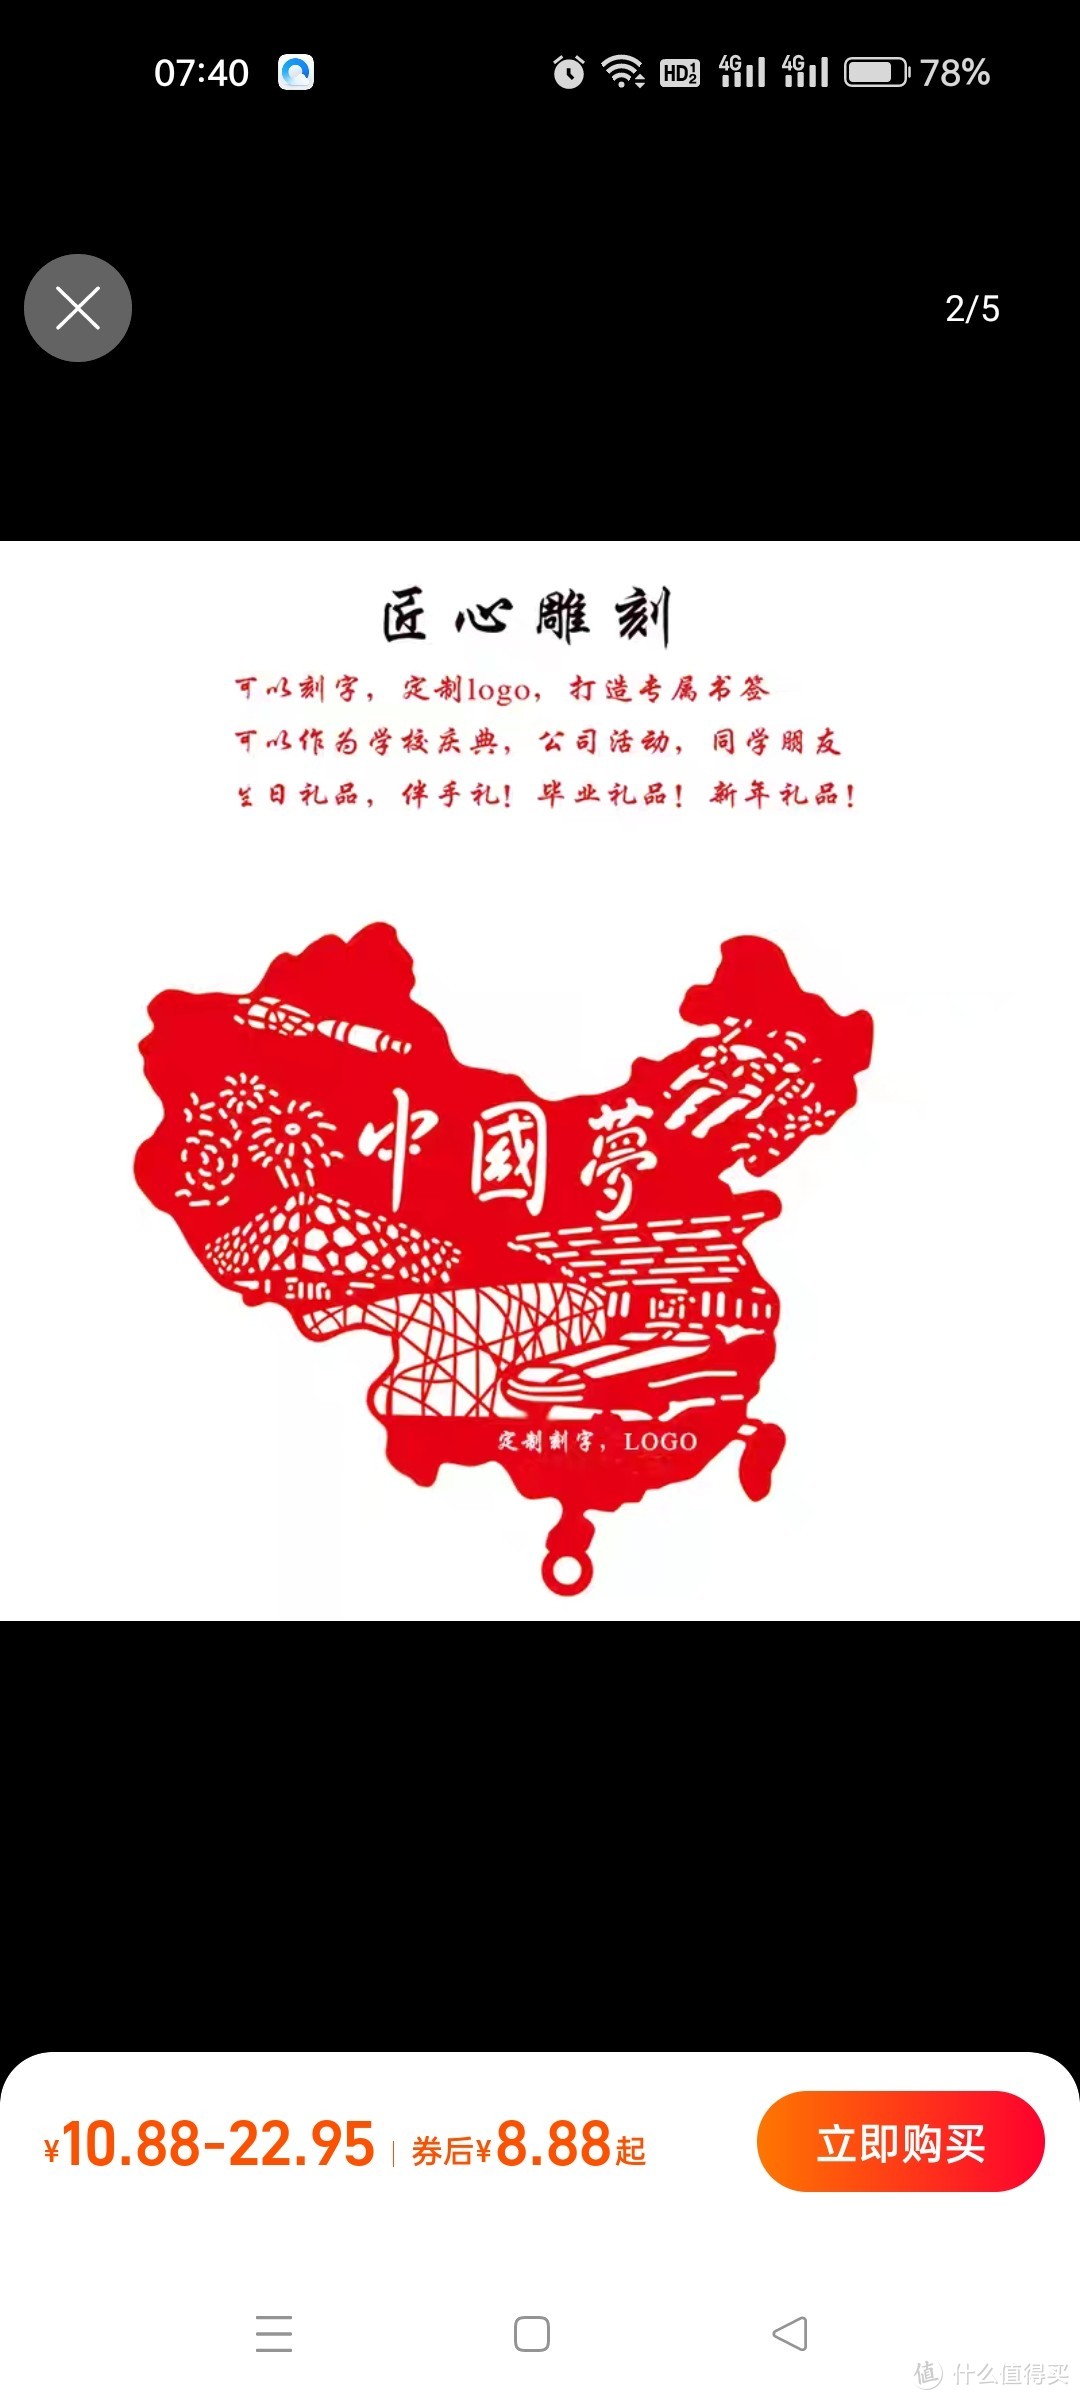 中国梦古典爱国教育定制礼物金属镂空书签批发创意刻字文创礼品